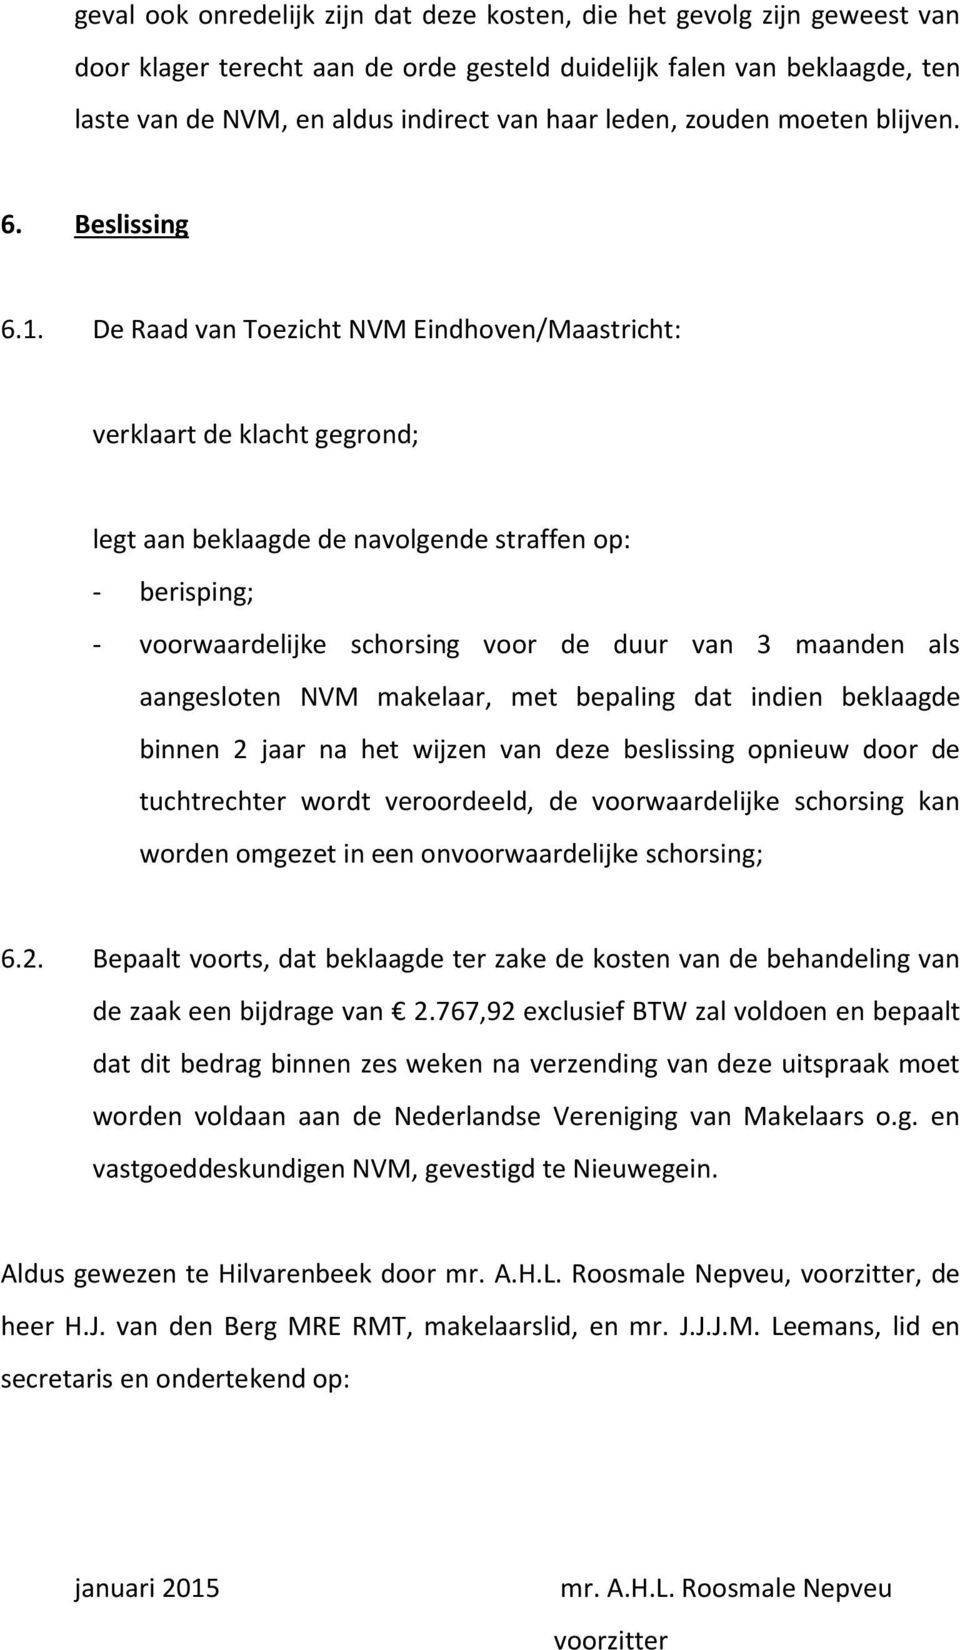 De Raad van Toezicht NVM Eindhoven/Maastricht: verklaart de klacht gegrond; legt aan beklaagde de navolgende straffen op: - berisping; - voorwaardelijke schorsing voor de duur van 3 maanden als